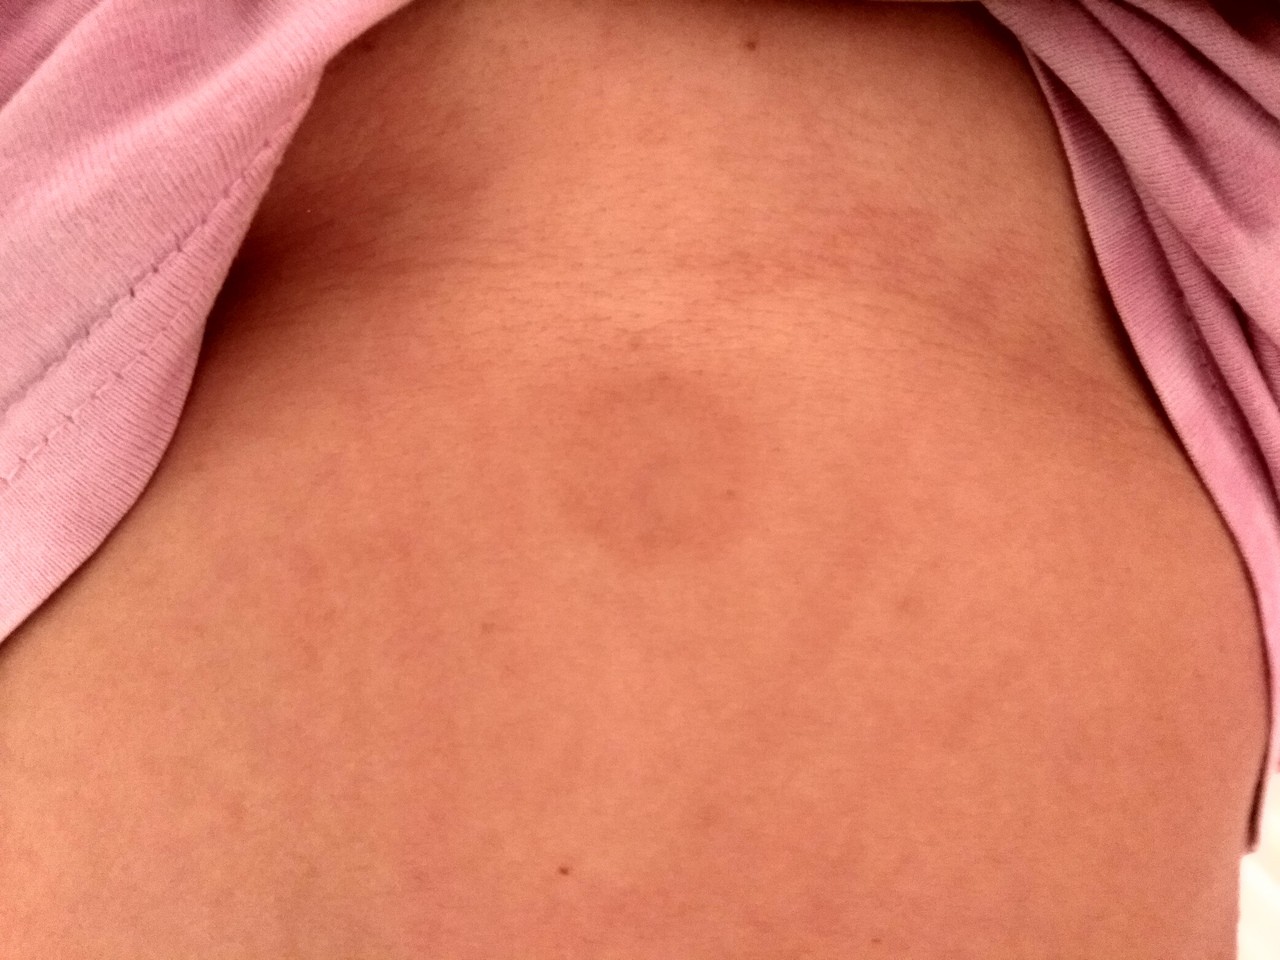 покраснение кожи на груди у женщин фото 24